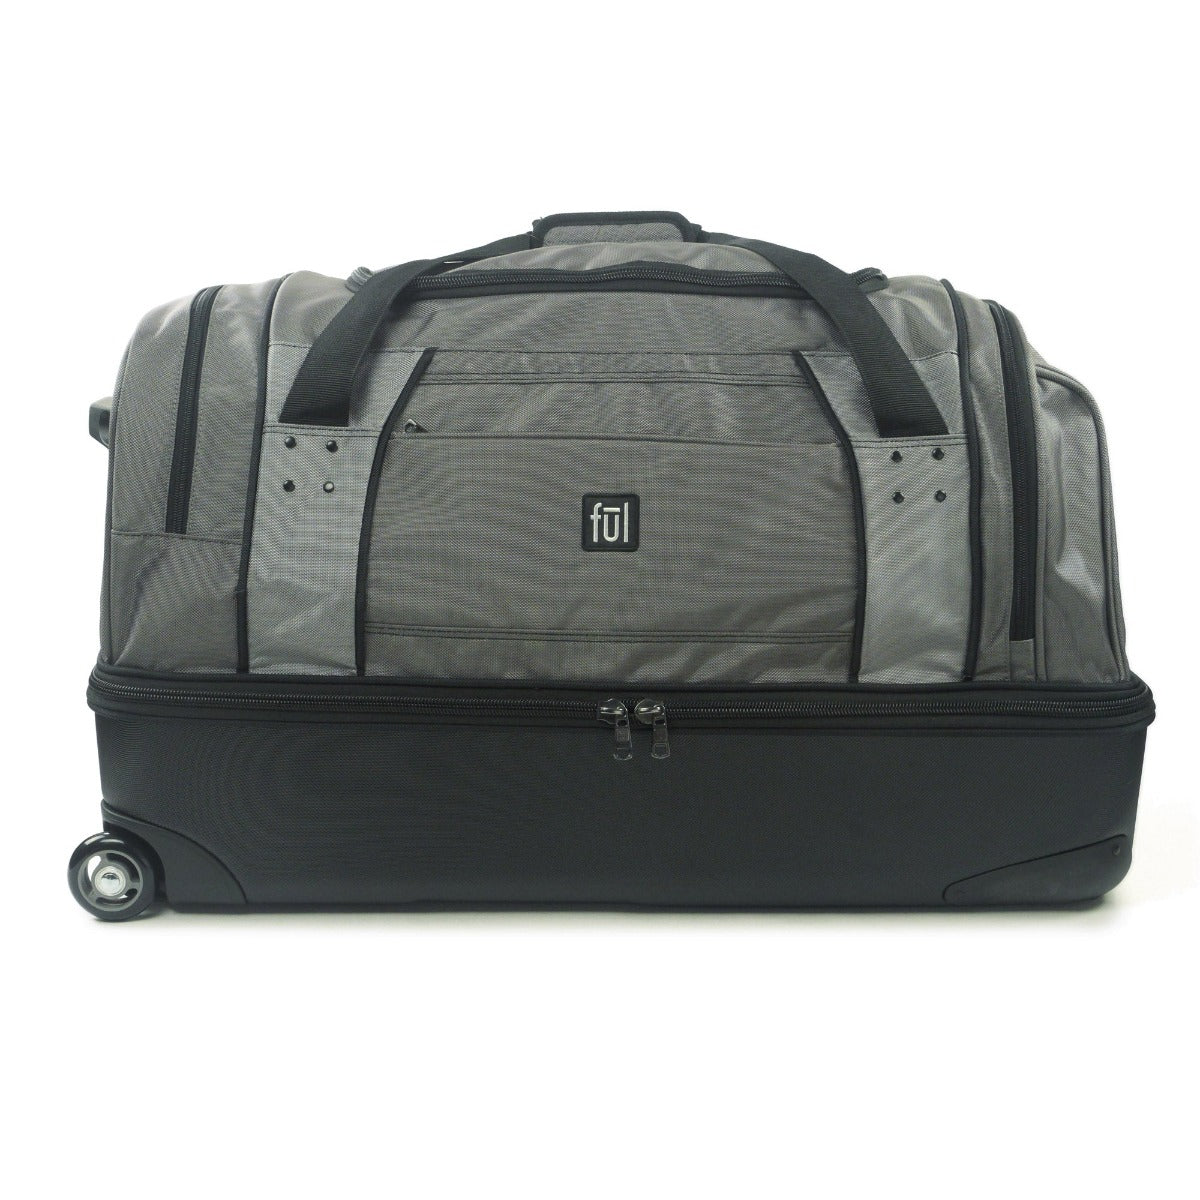 Workhorse 30 inch Split Level Grey FuL Rolling Duffel Bag duffle luggage